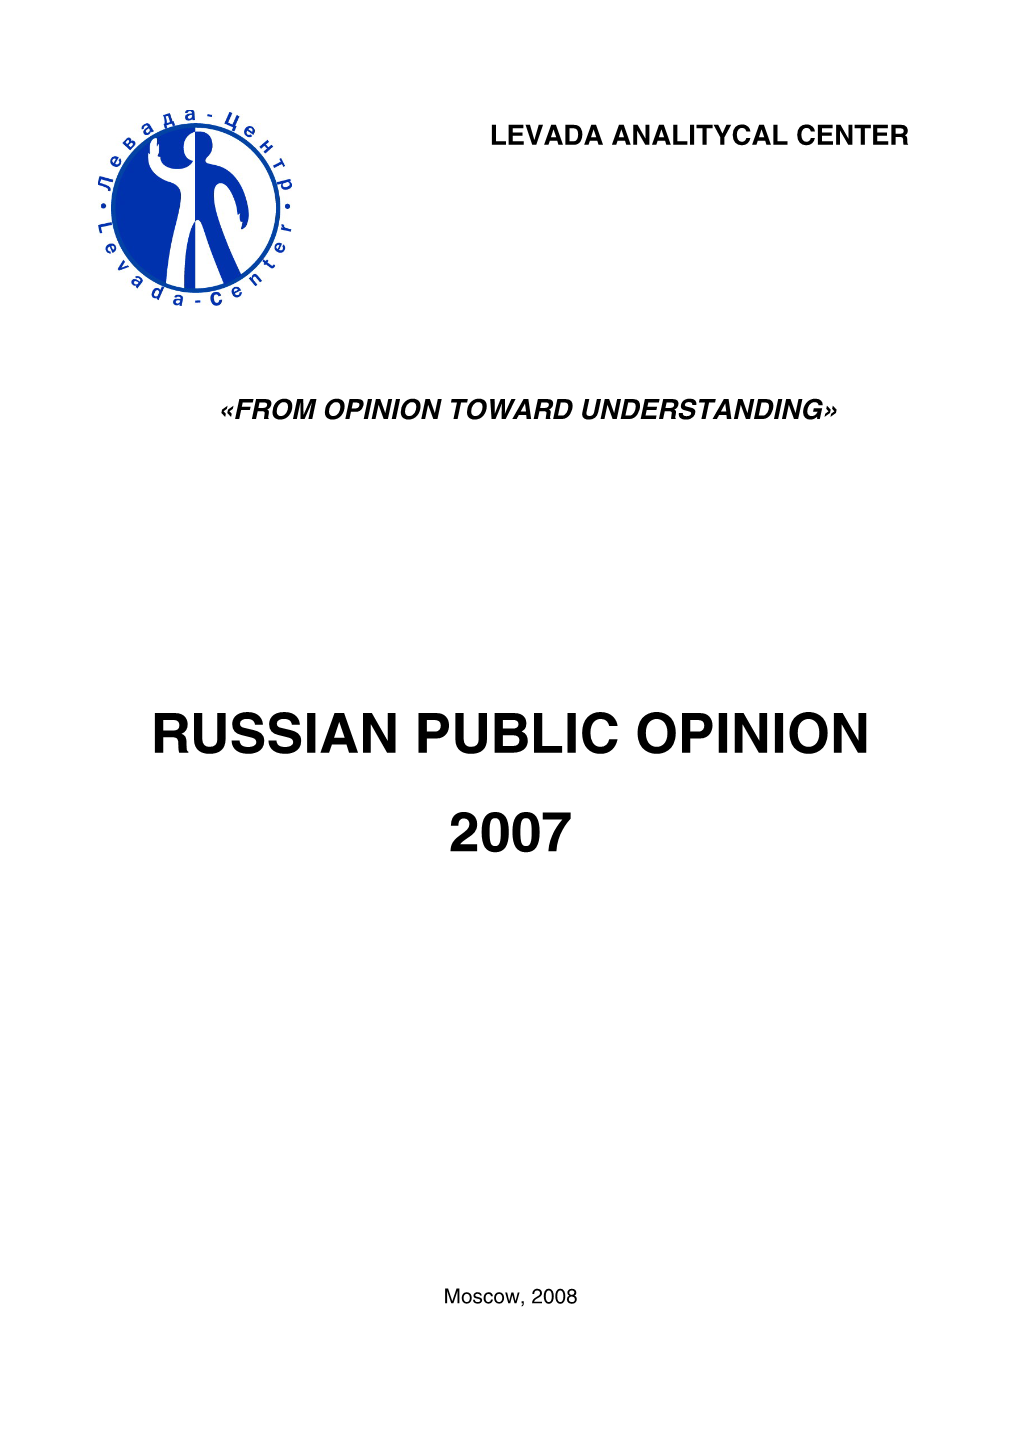 Russian Public Opinion 2007